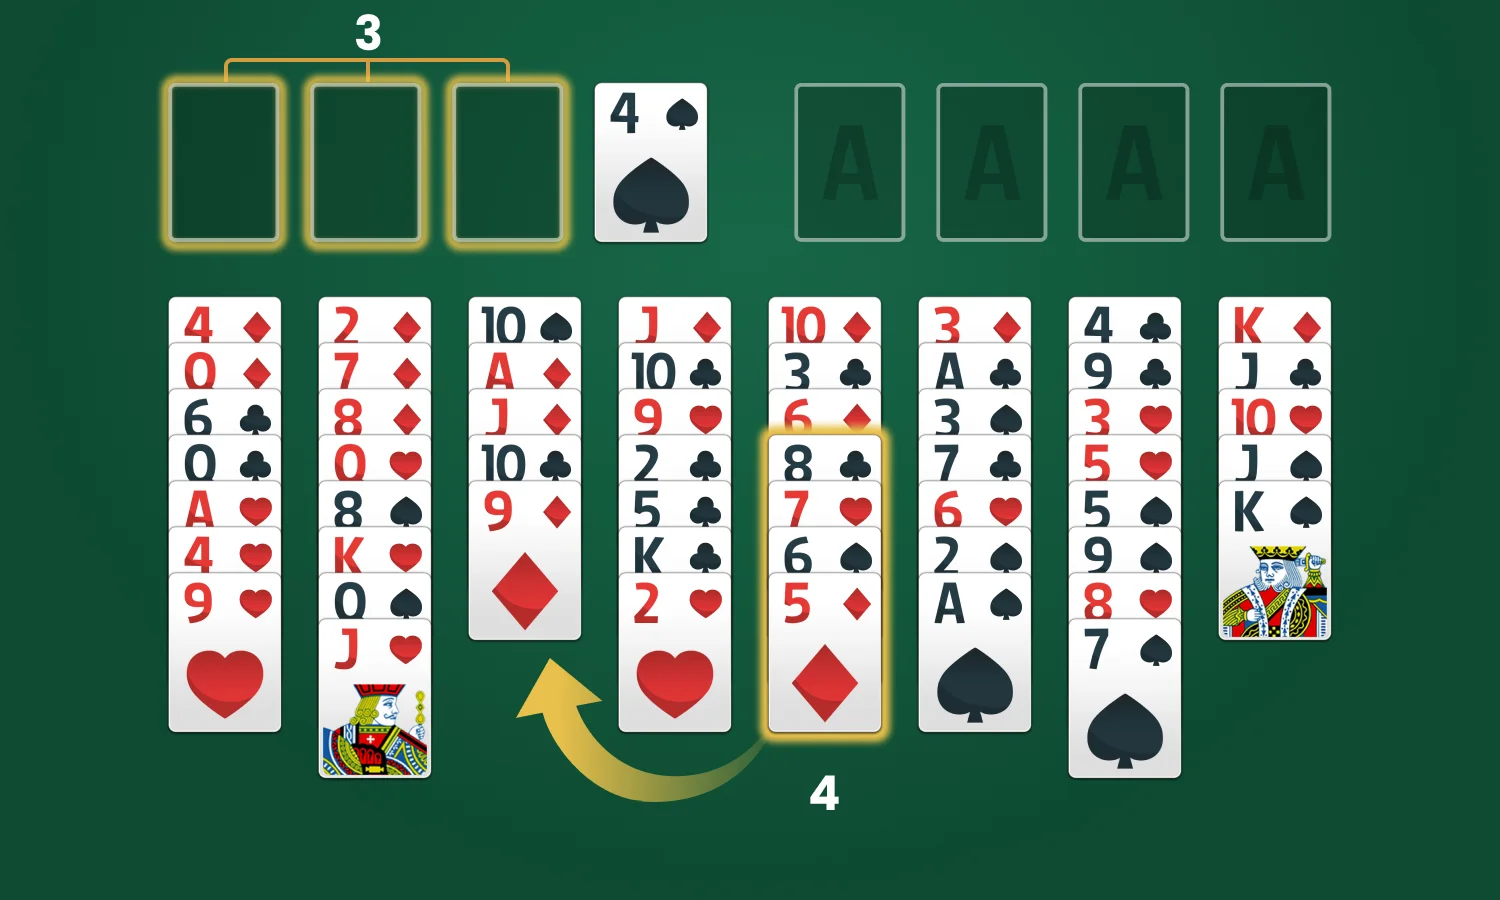 Règles du jeu Solitaire FreeCell: Déplacer des séquences de cartes